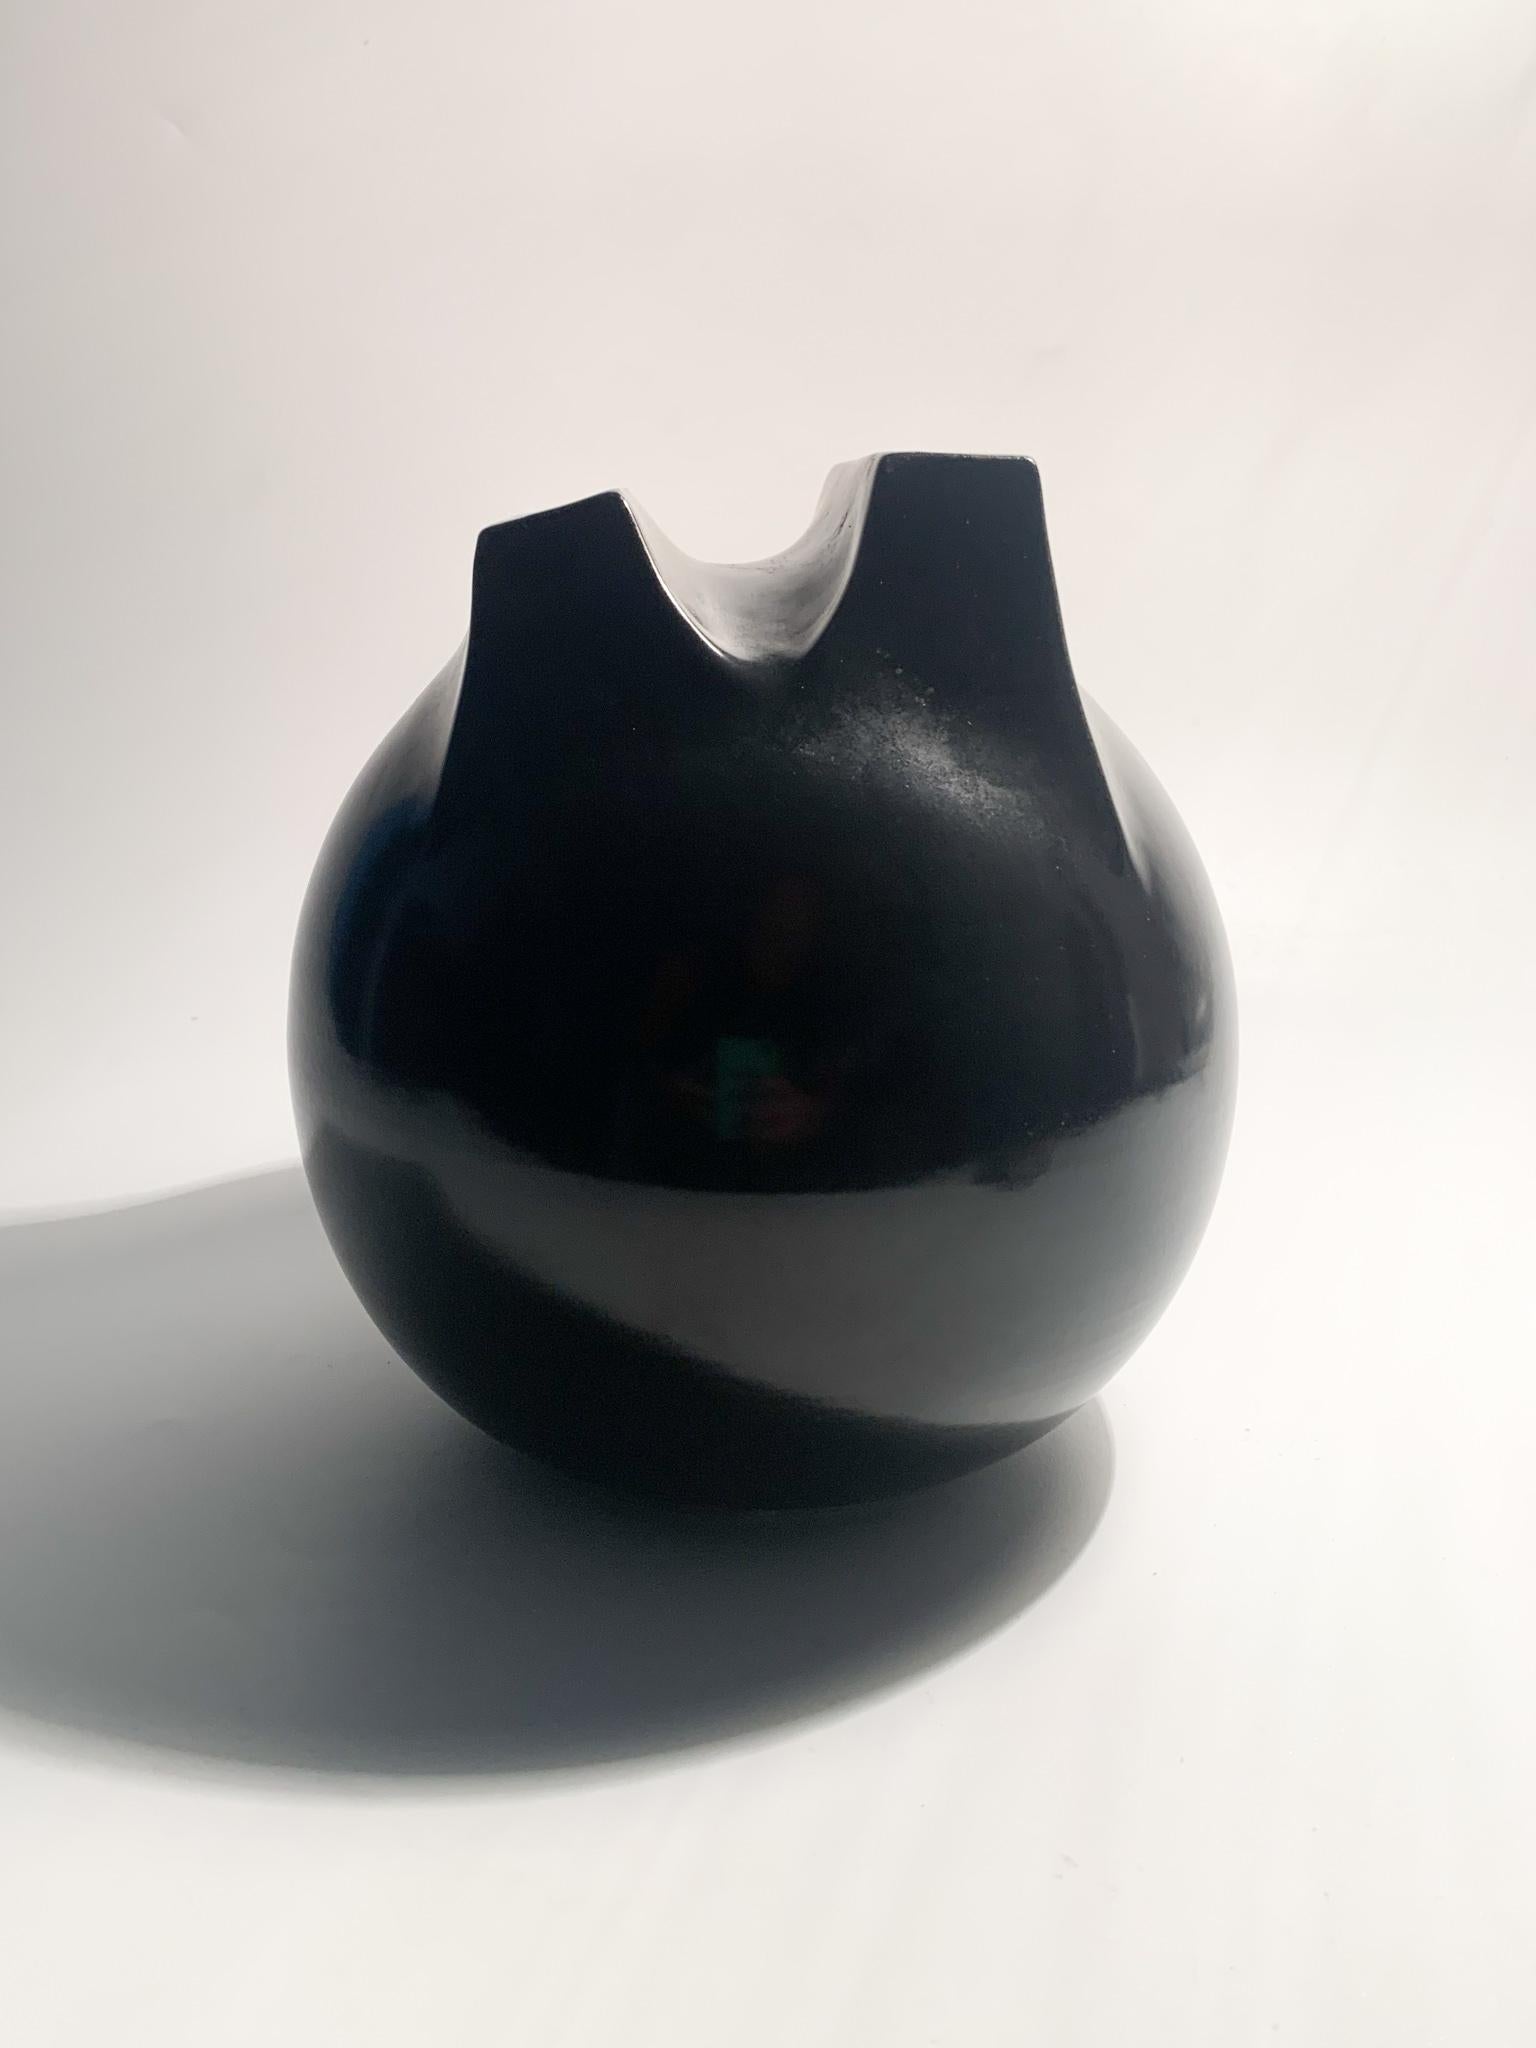 Vase en céramique noire, modèle Whistle à double embouchure, réalisé par Franco Bucci pour Laboratorio Pesaro dans les années 1970.

diamètre cm 16 h cm 18